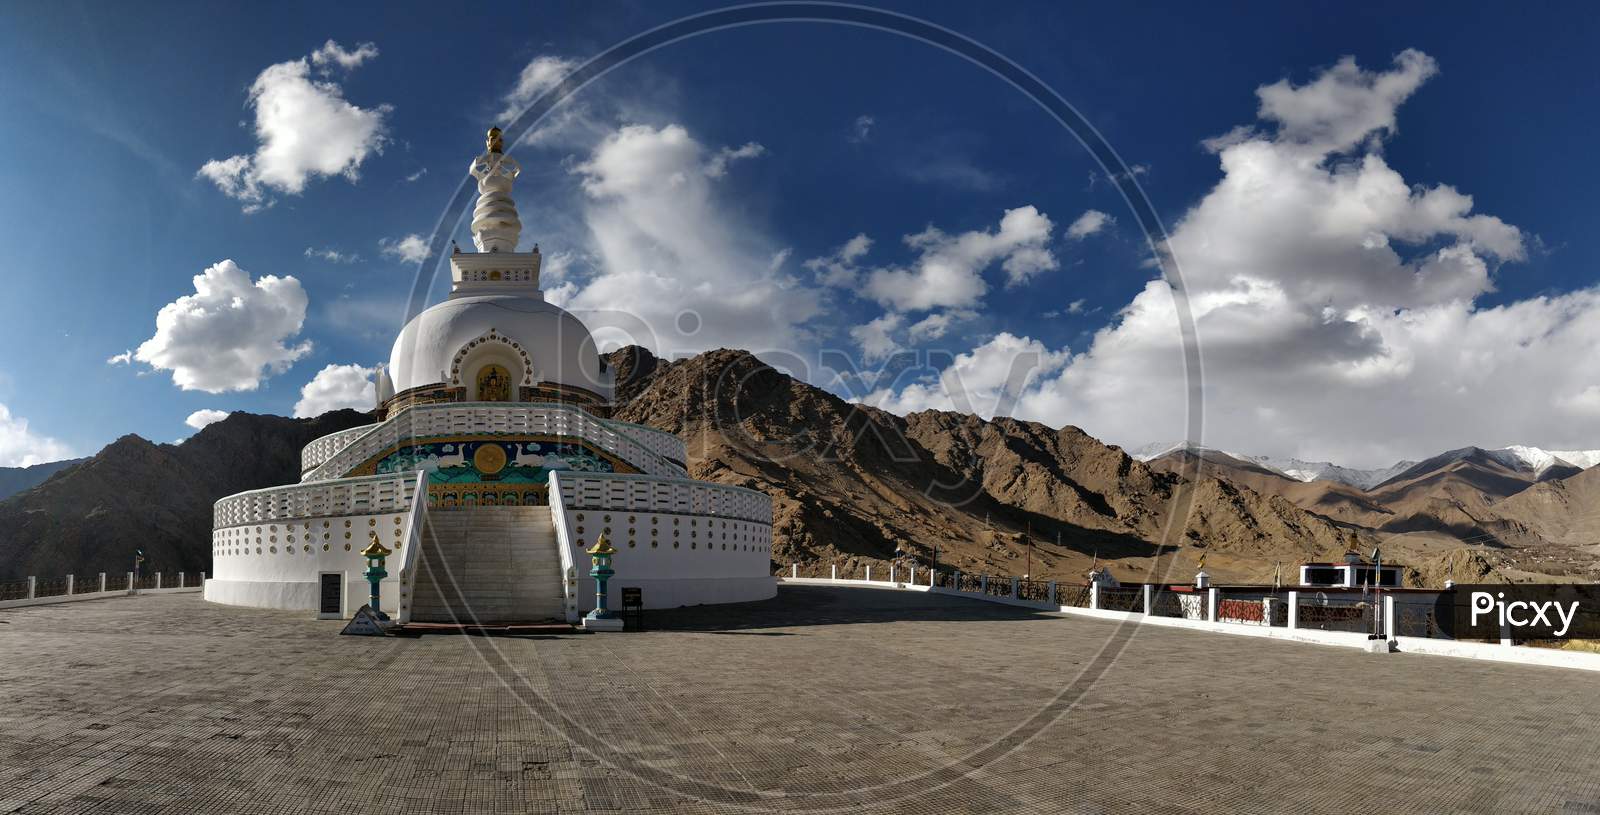 Shanti Stupa, Leh, Ladakh